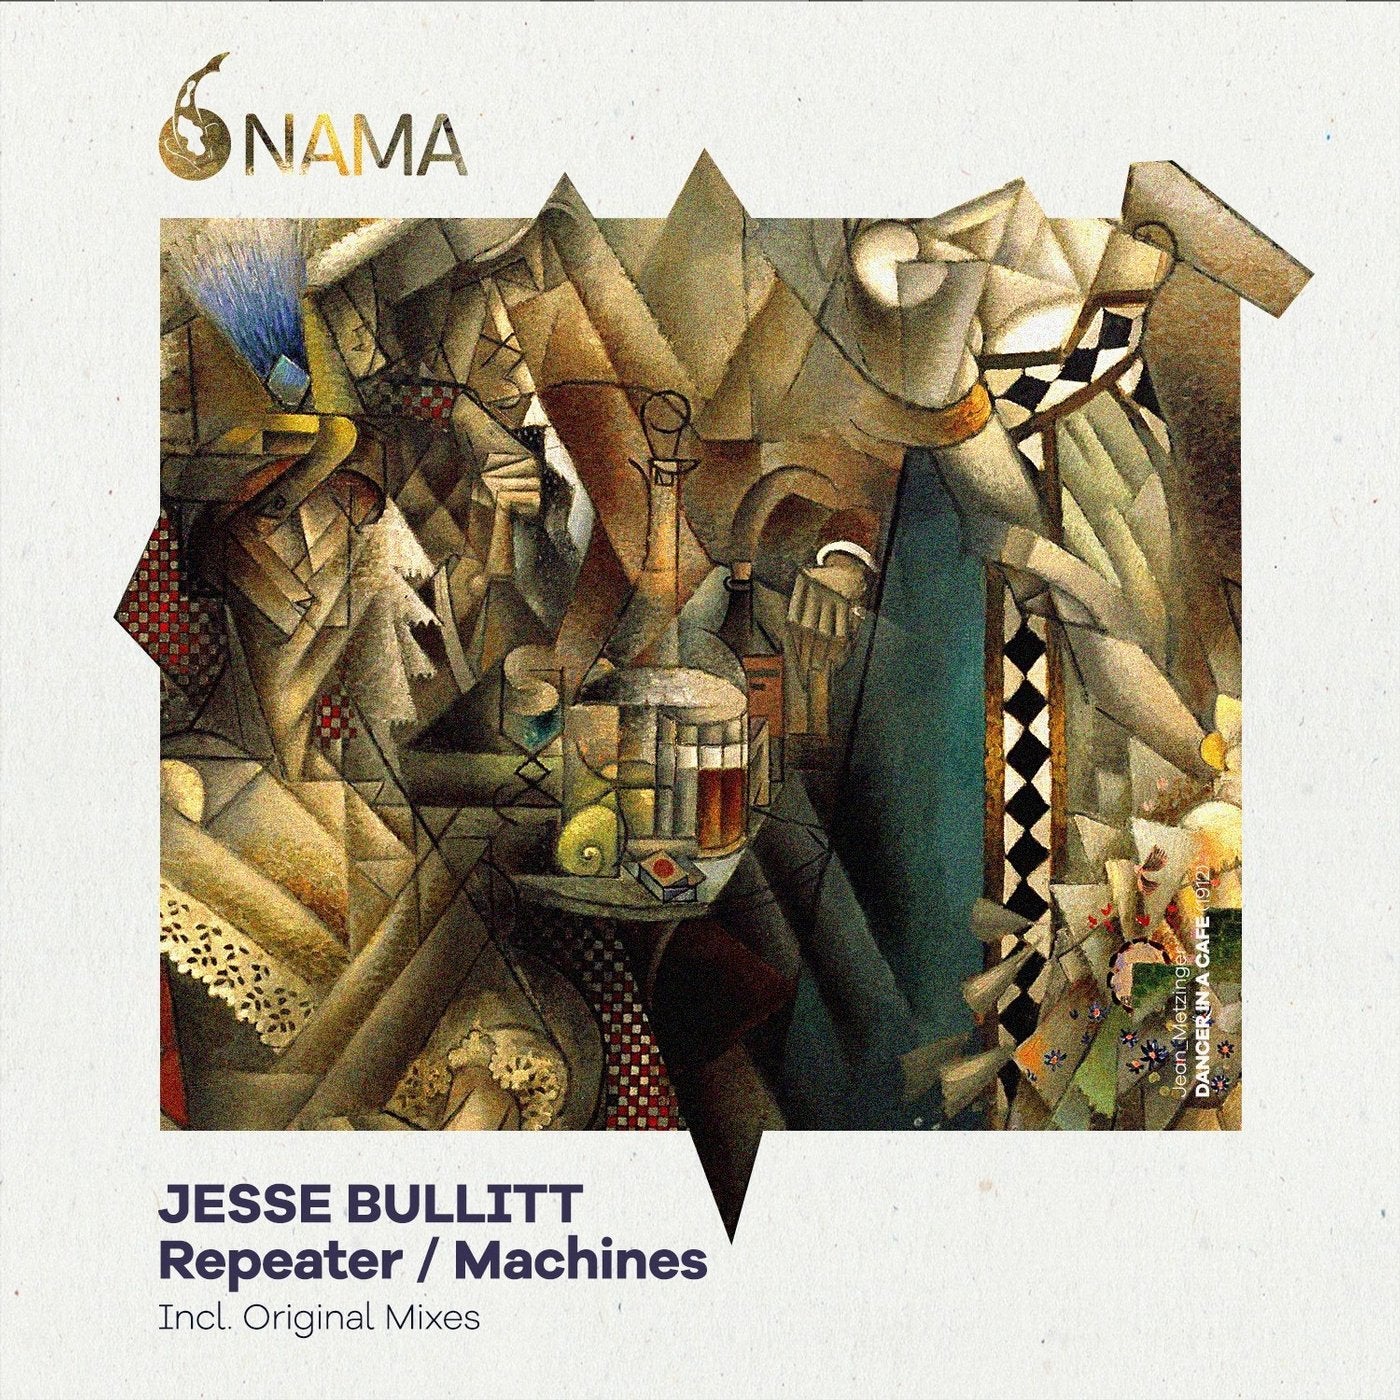 Repeater / Machines